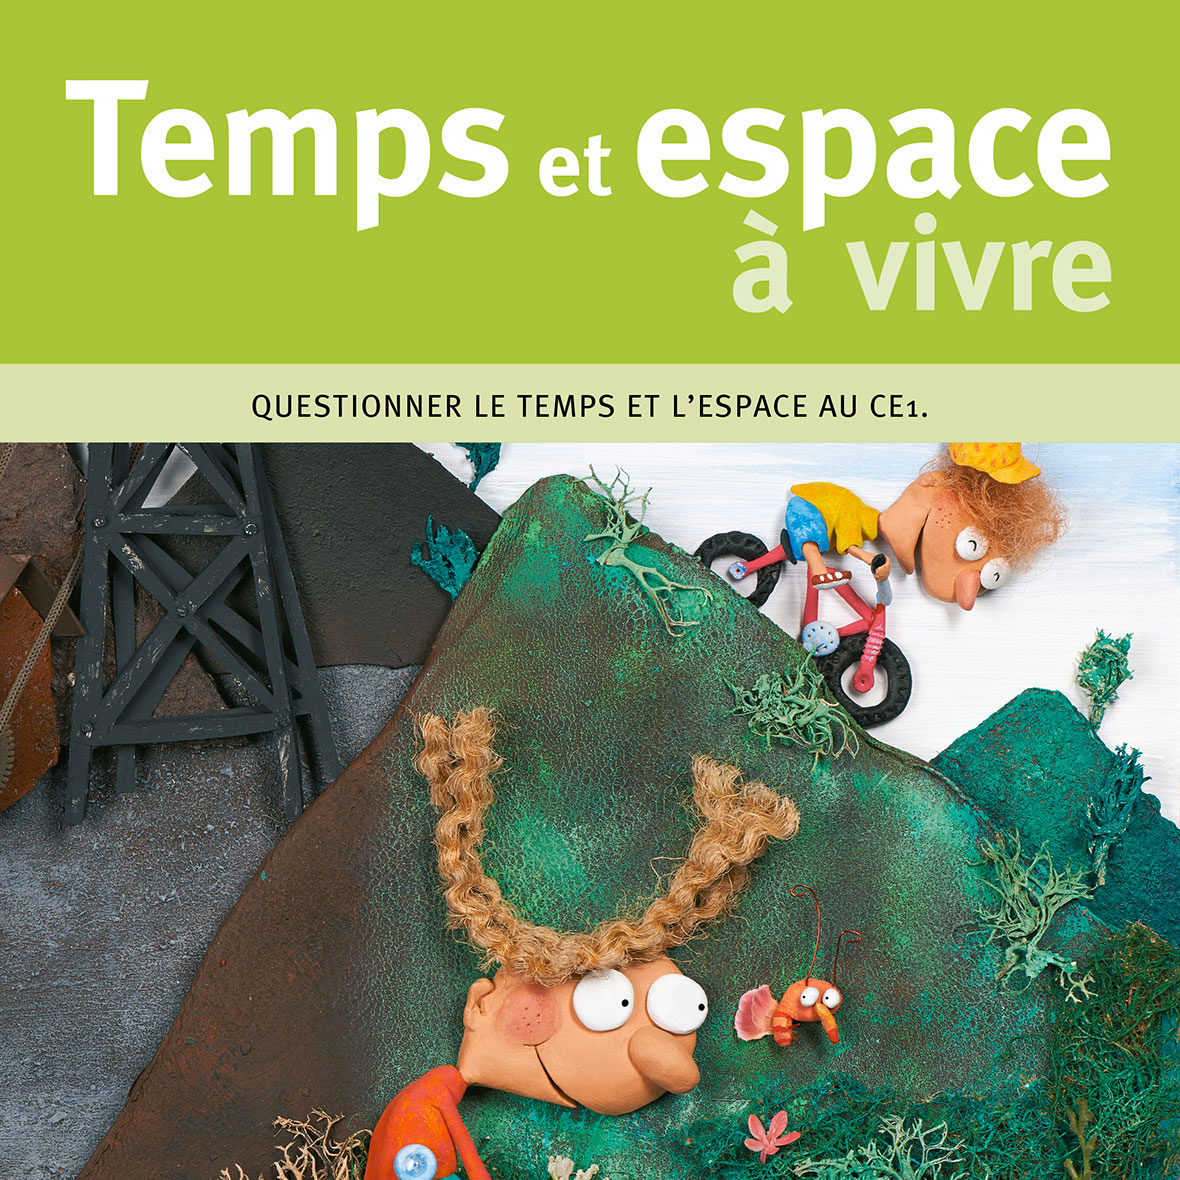 Temps et espace a vivre ce1 miniature 1 acces editions.jpg